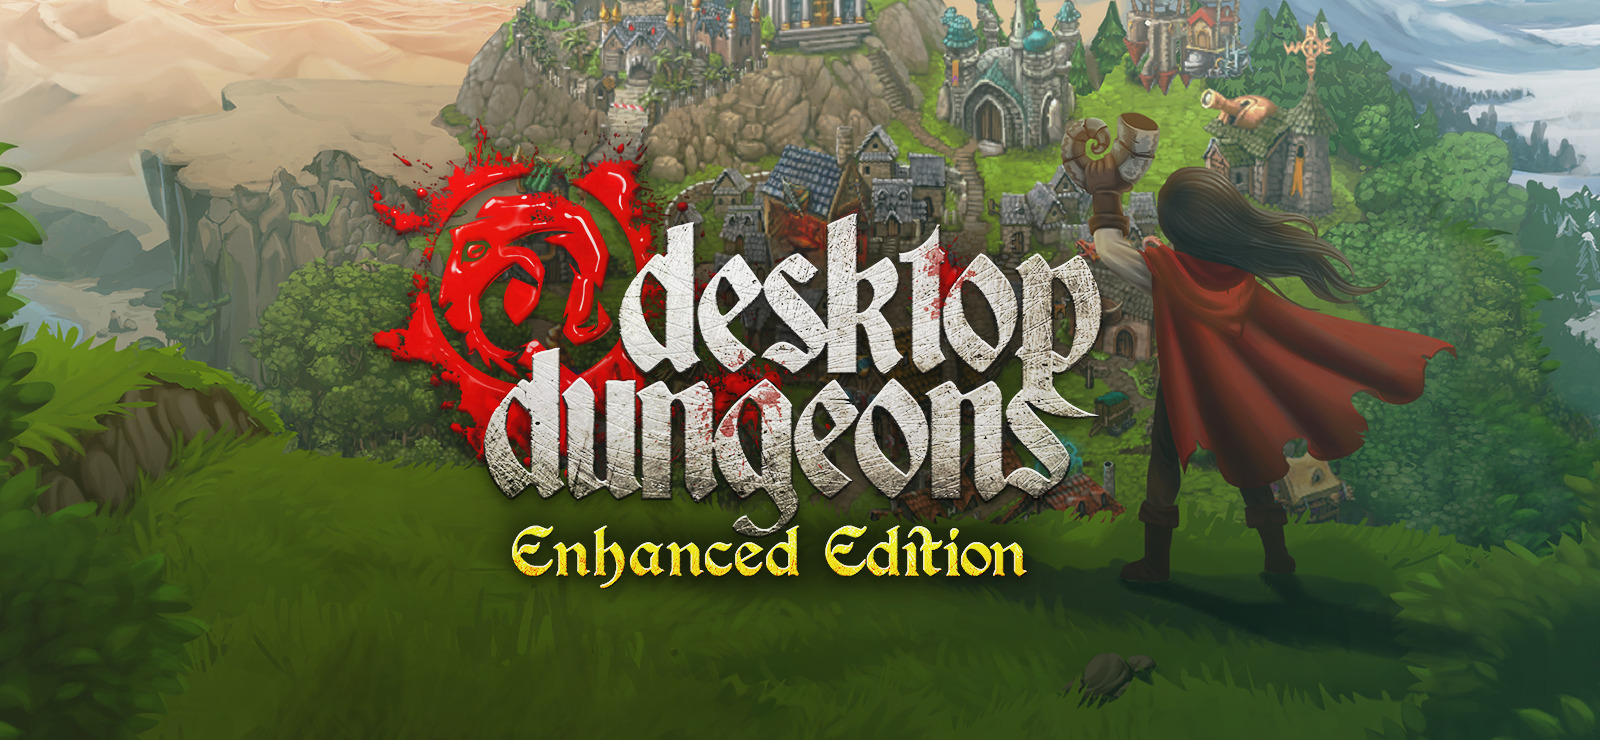 Dungeons enhanced 1.16 5. Desktop Dungeons enhanced. Dungeons and desktops. Игра desktop Dungeon. Enhanced Dungeons enhanced.